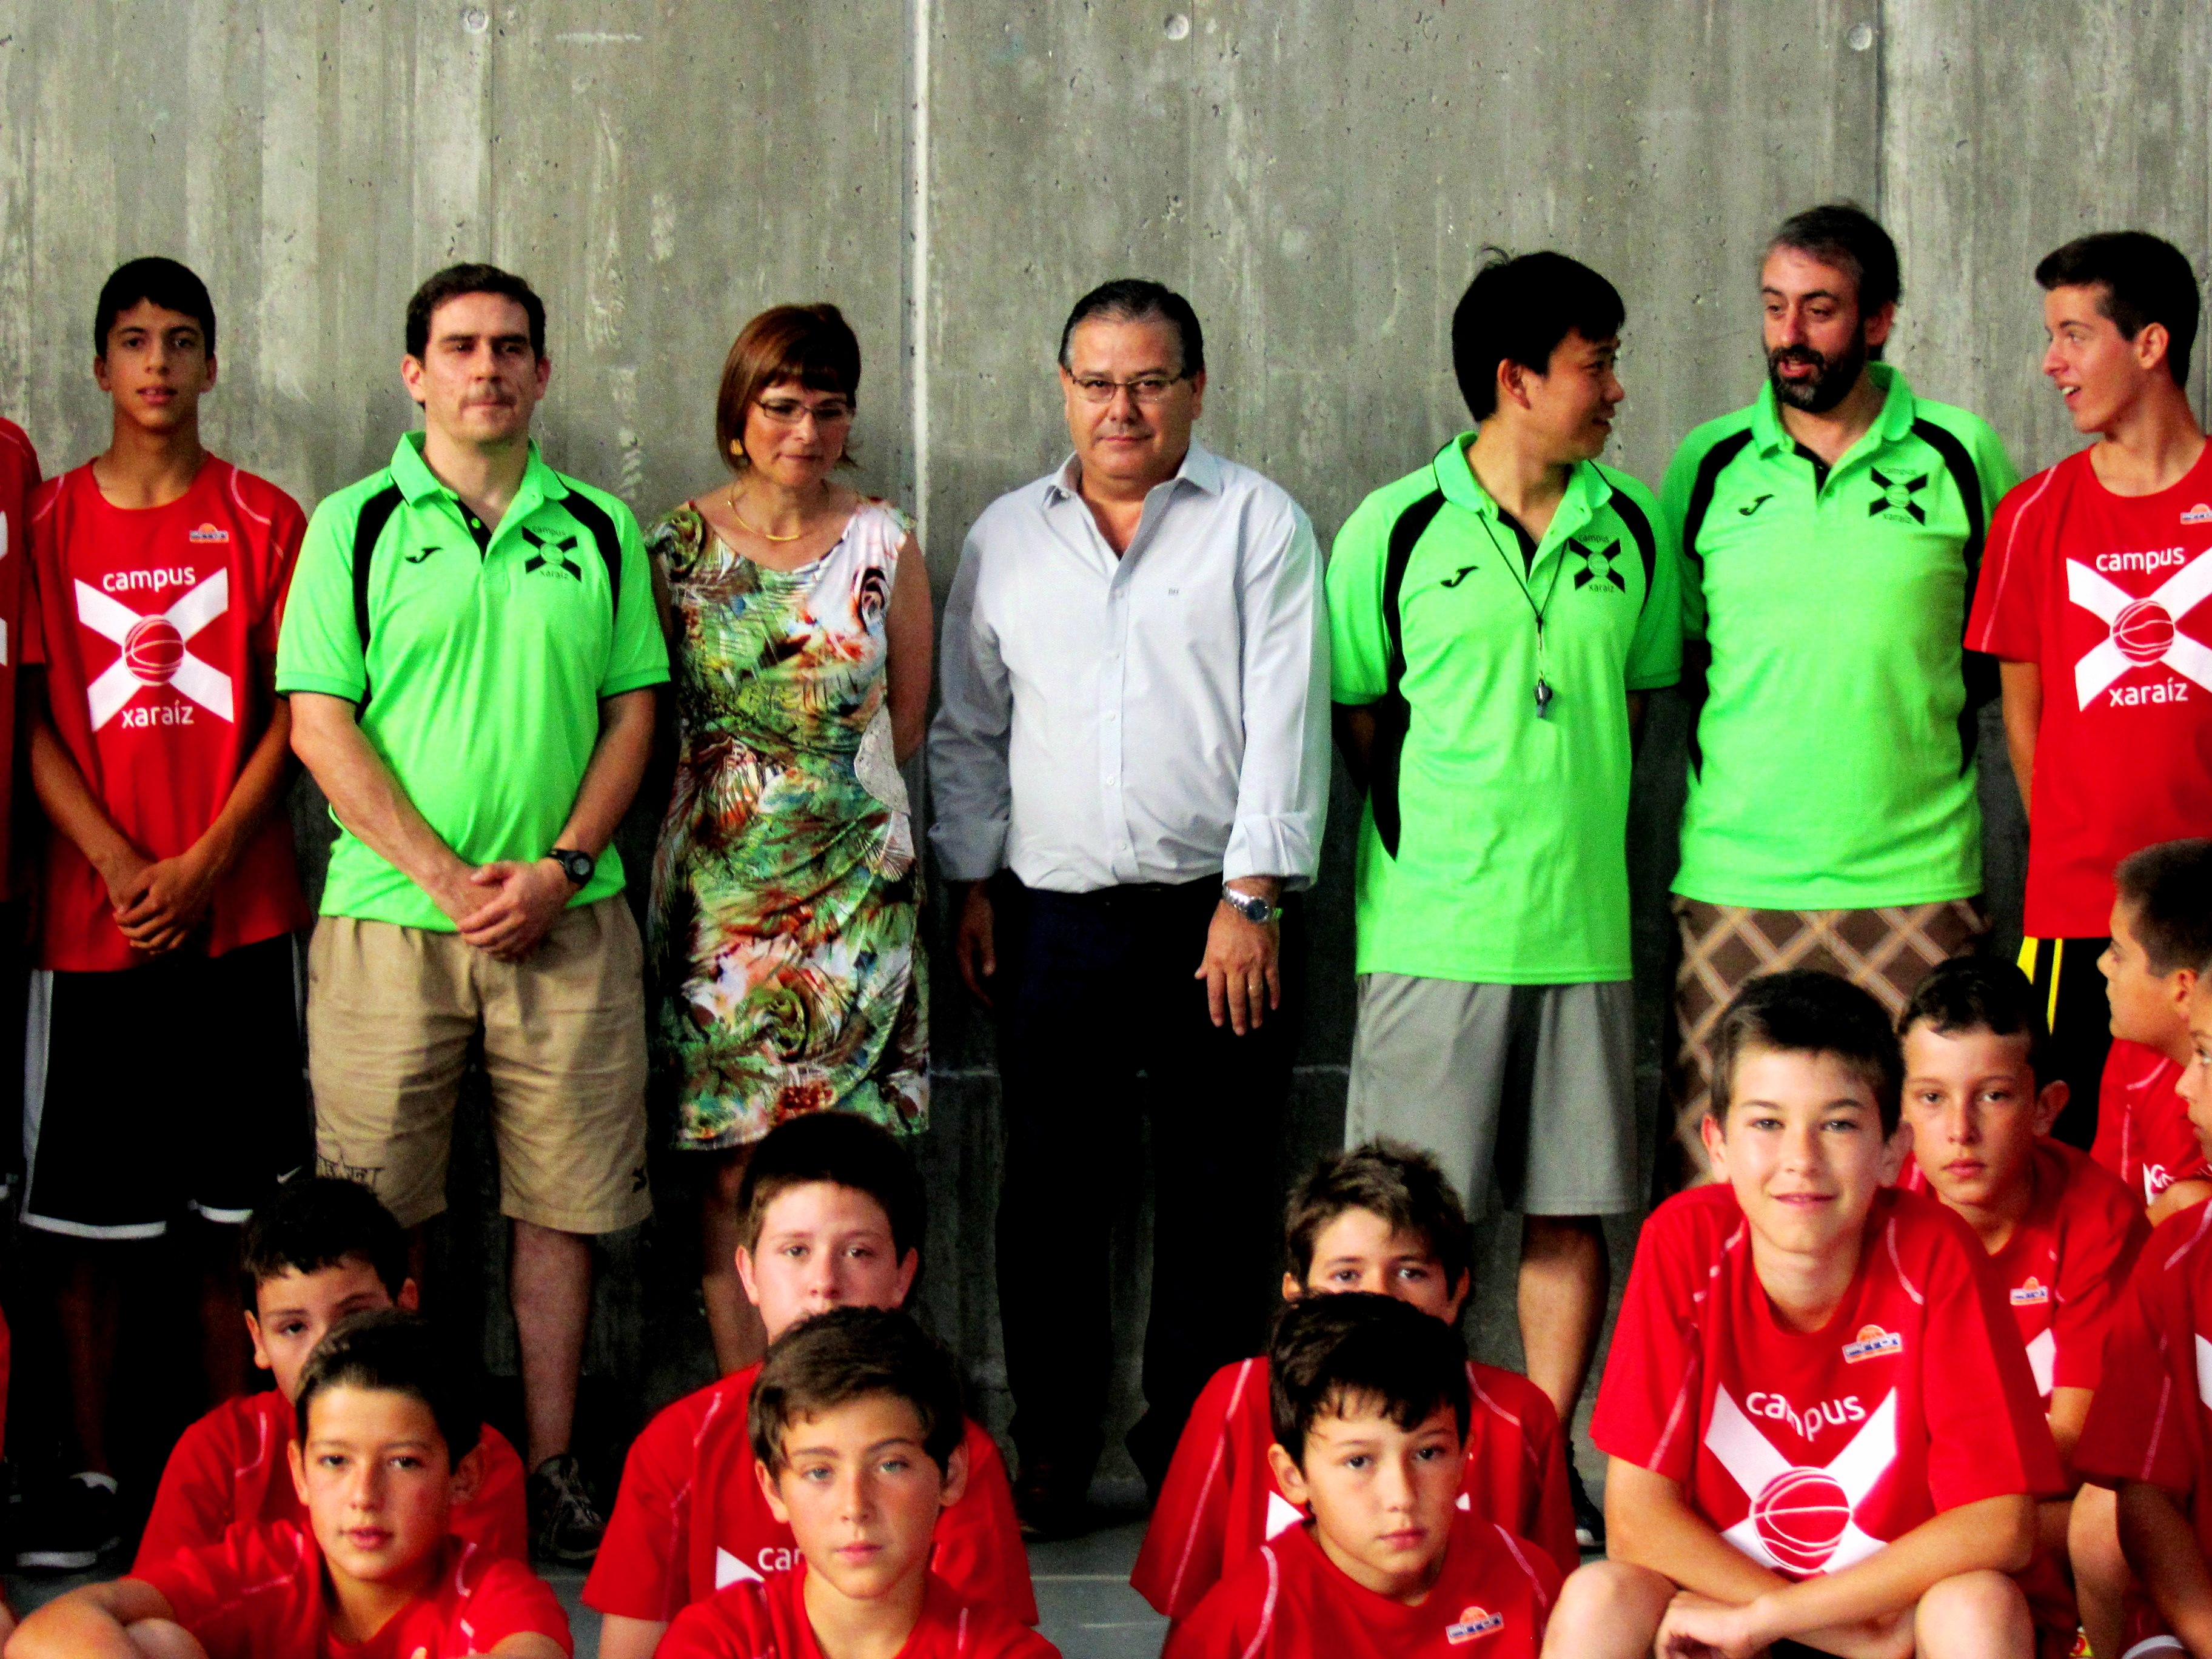 El sábado se clausuró el campus de baloncesto Xaraíz 2014